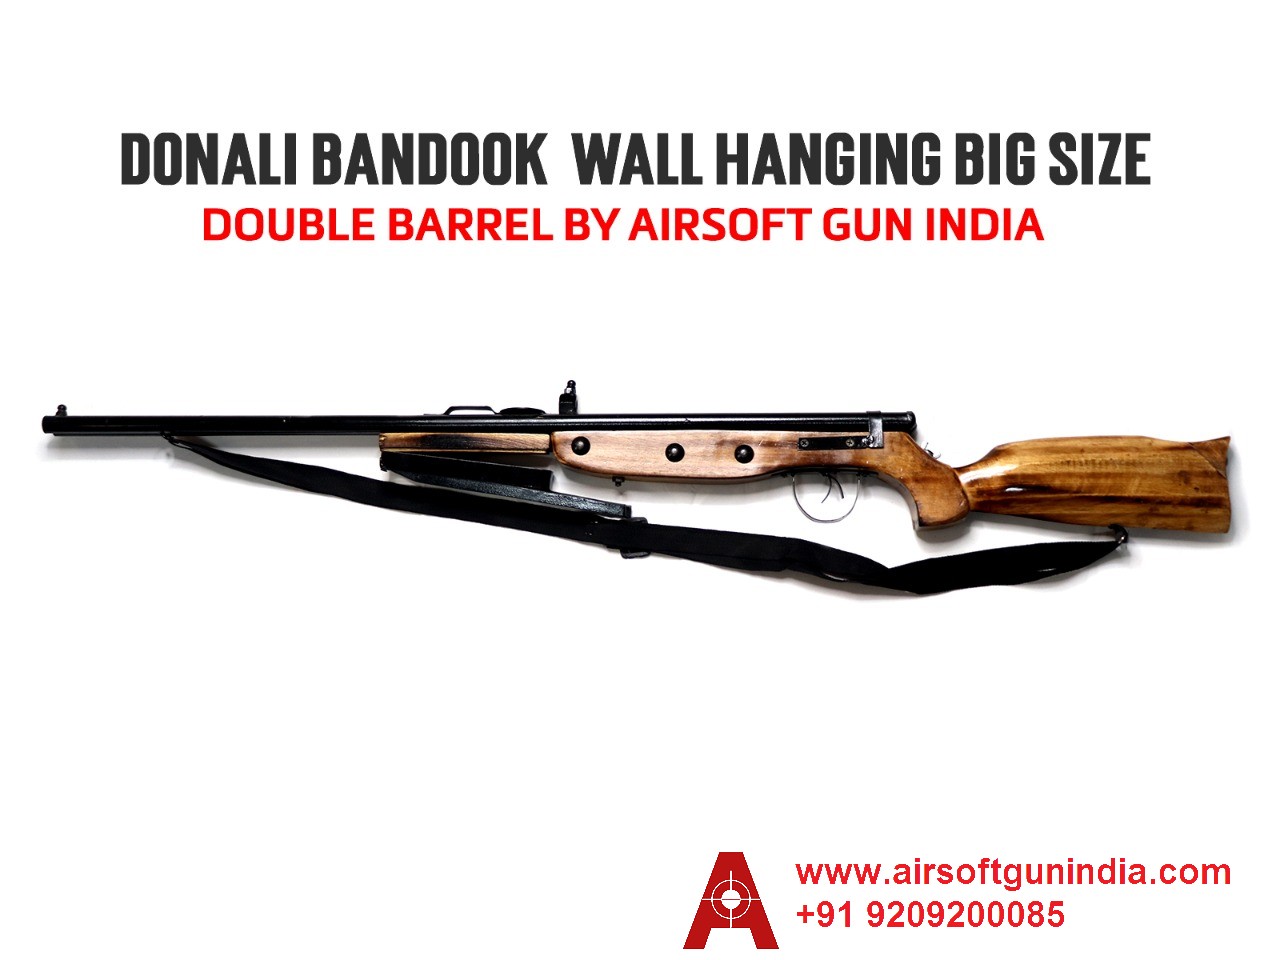 Donali Bandook Double Barrel Wall Hanging Big Size By Airsoft Gun India